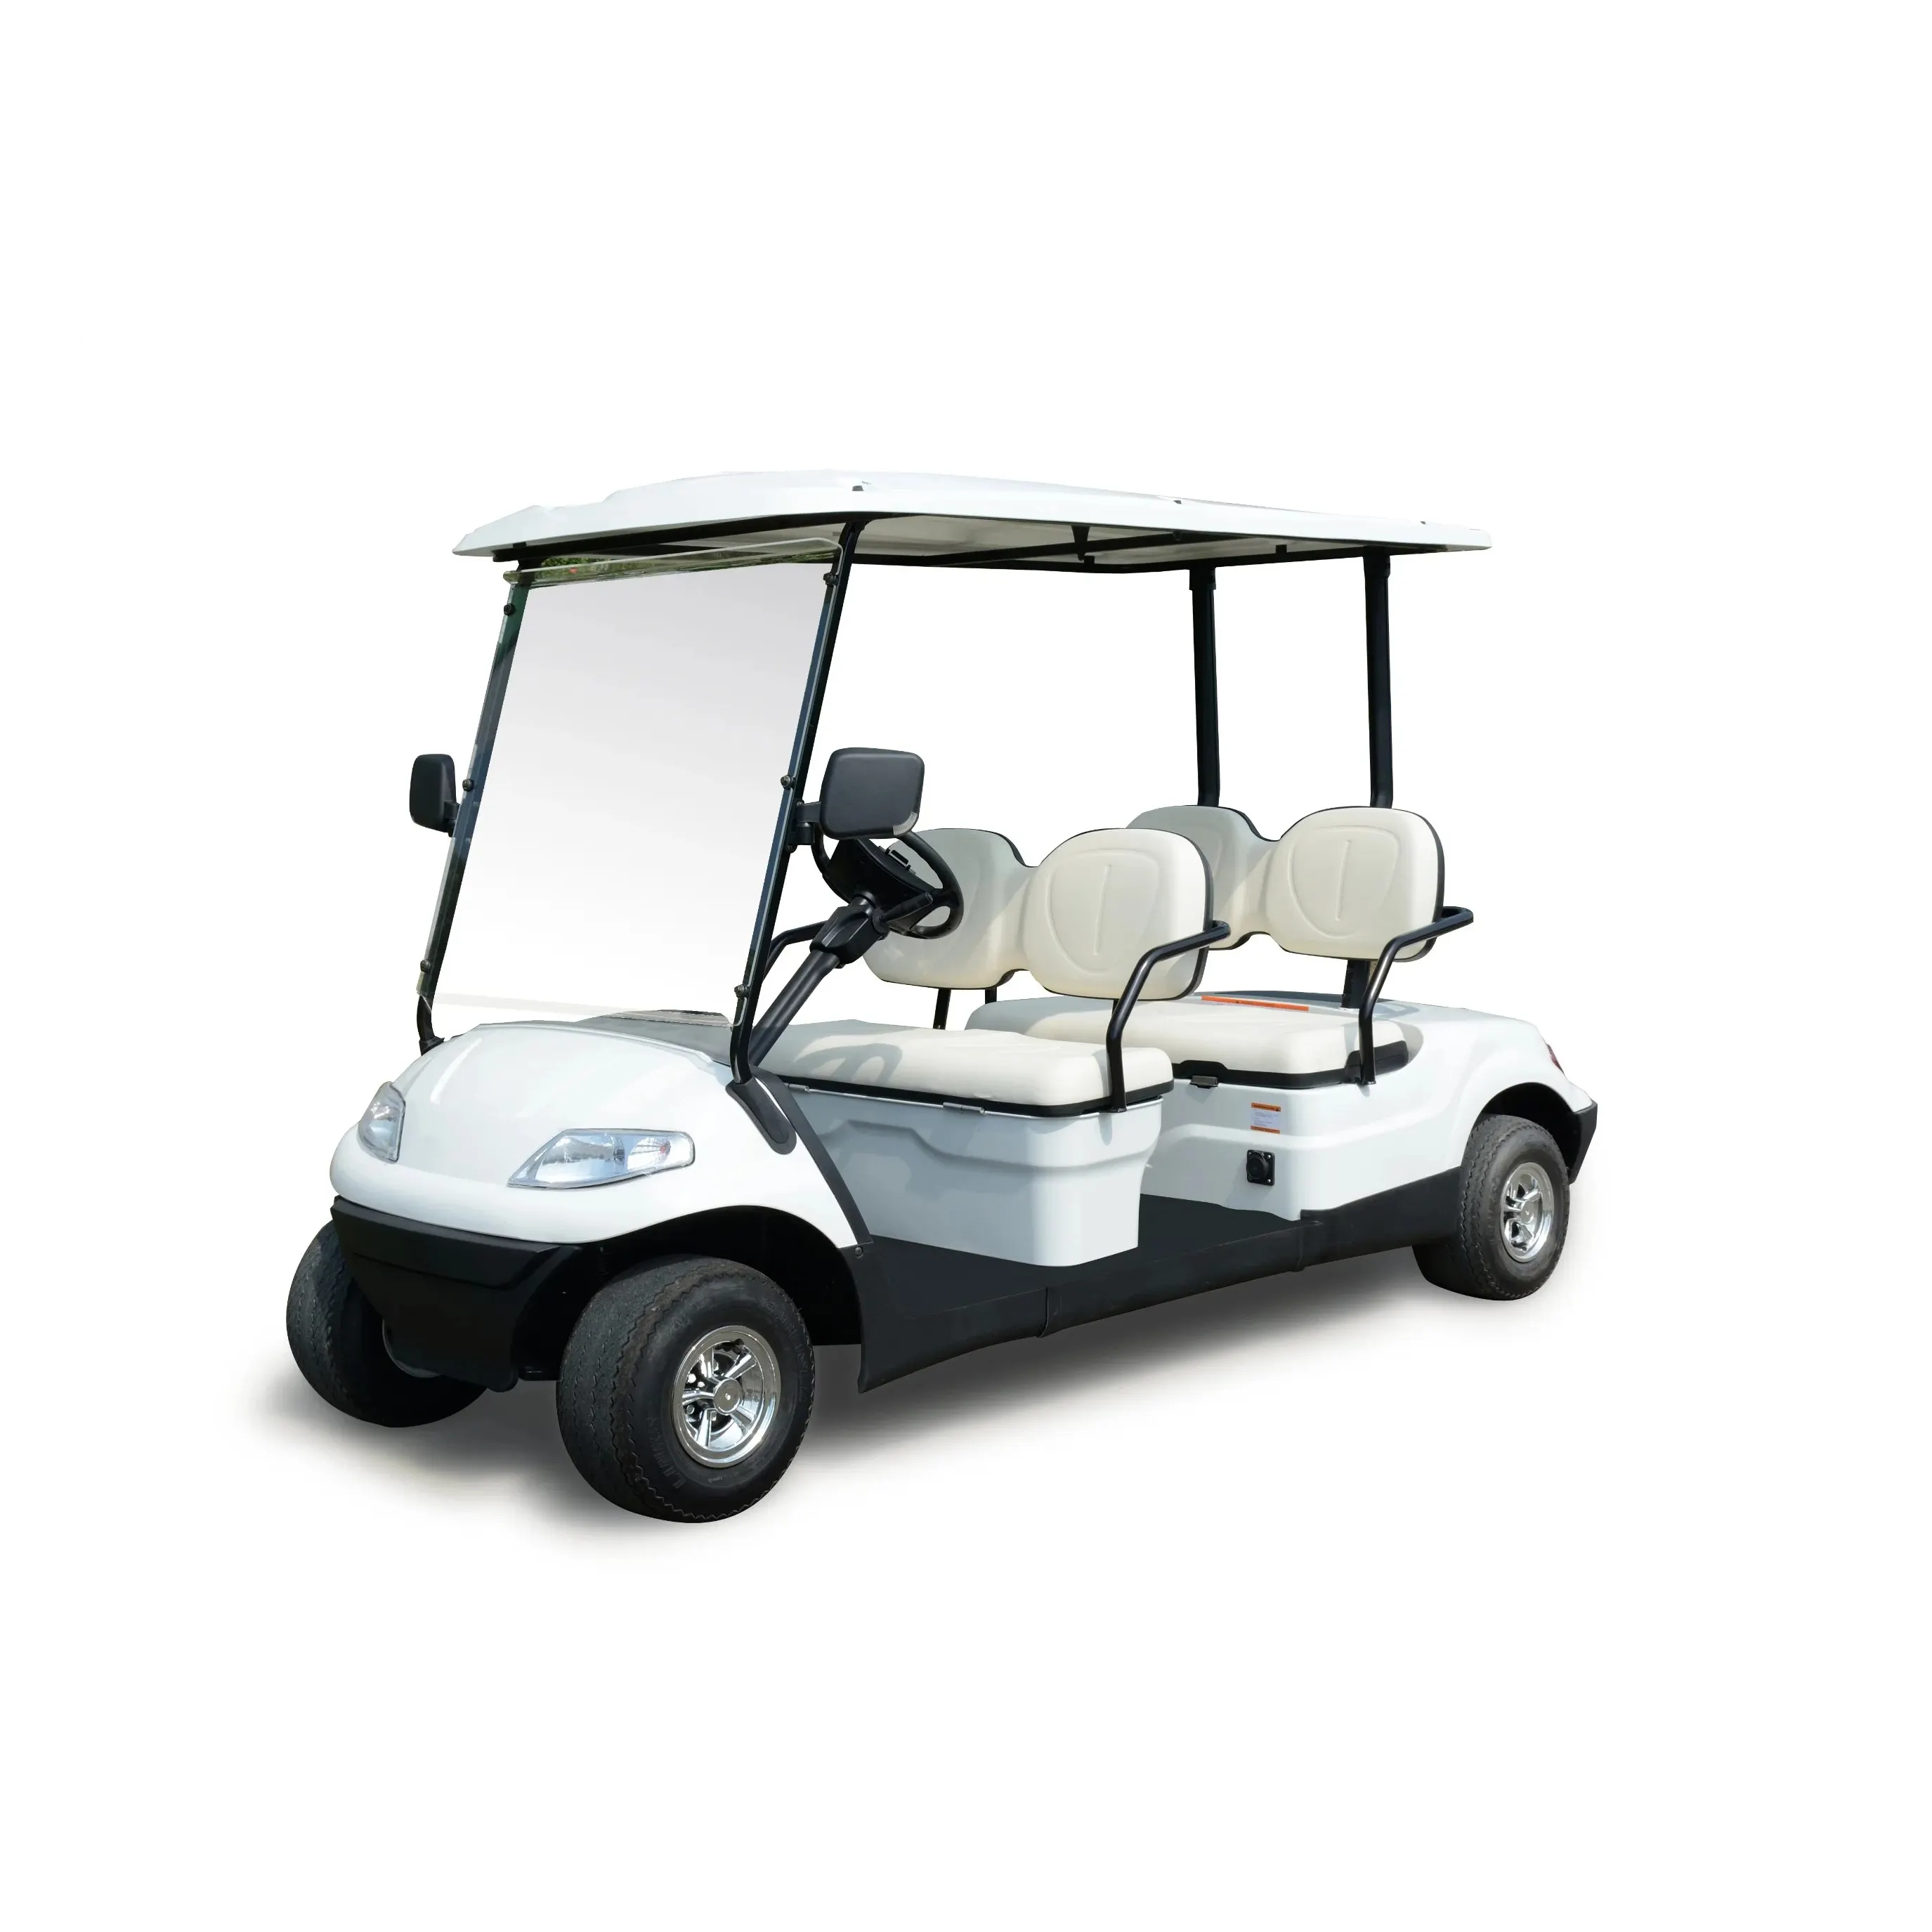 Nouvelle voiture de tourisme de voiturette de golf électrique 4 places alimentée par batterie au lithium moins chère lancée